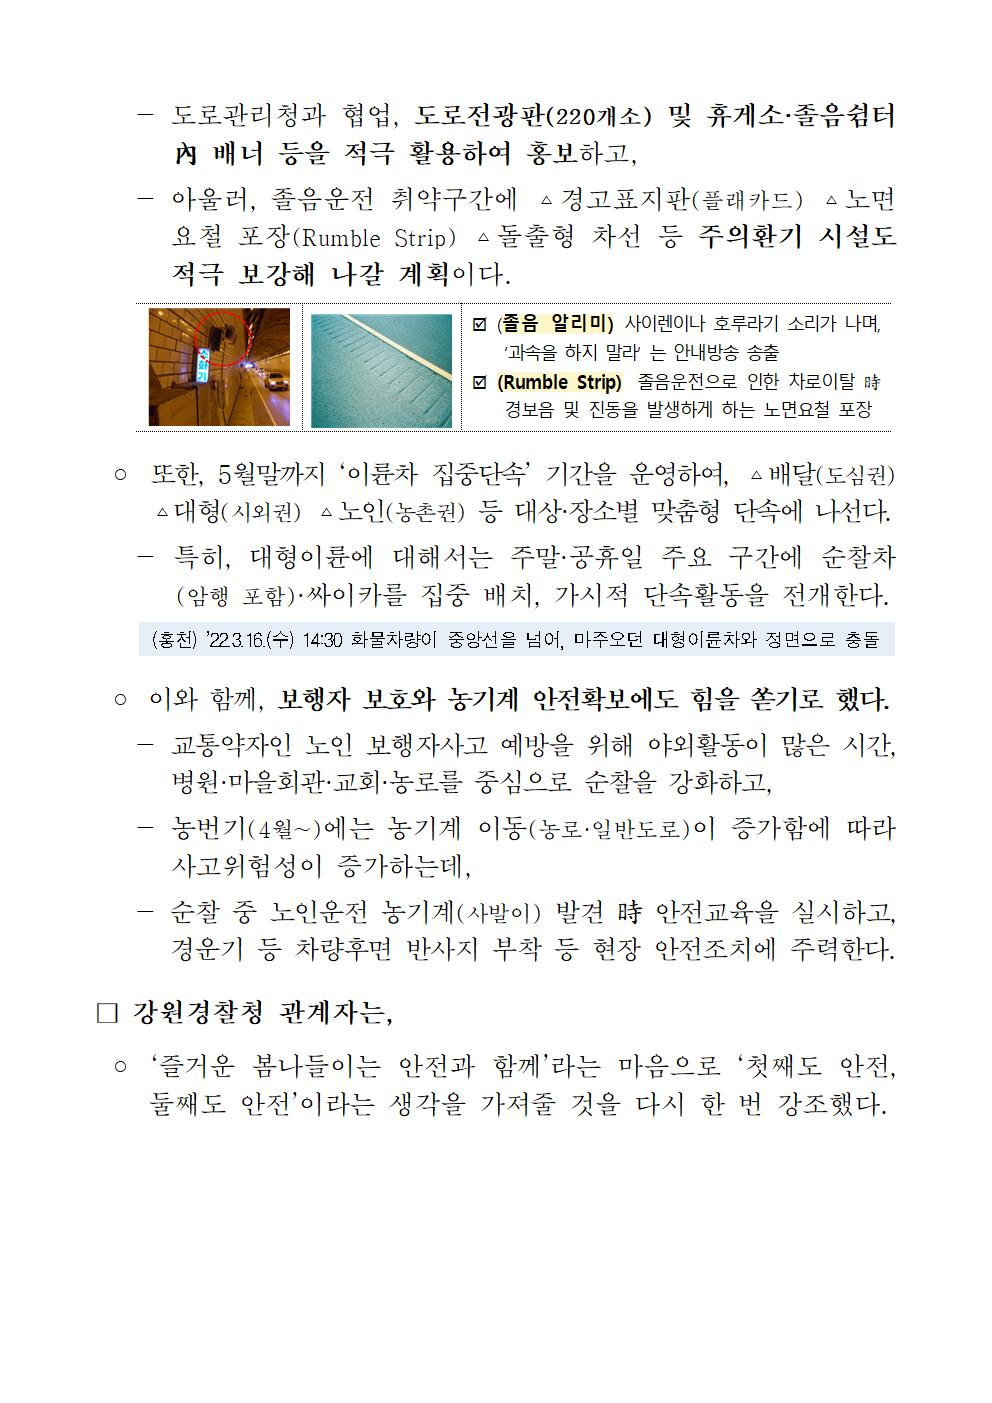 강원경찰청, 봄 행락철 교통안전 확보에 총력-보도자료2